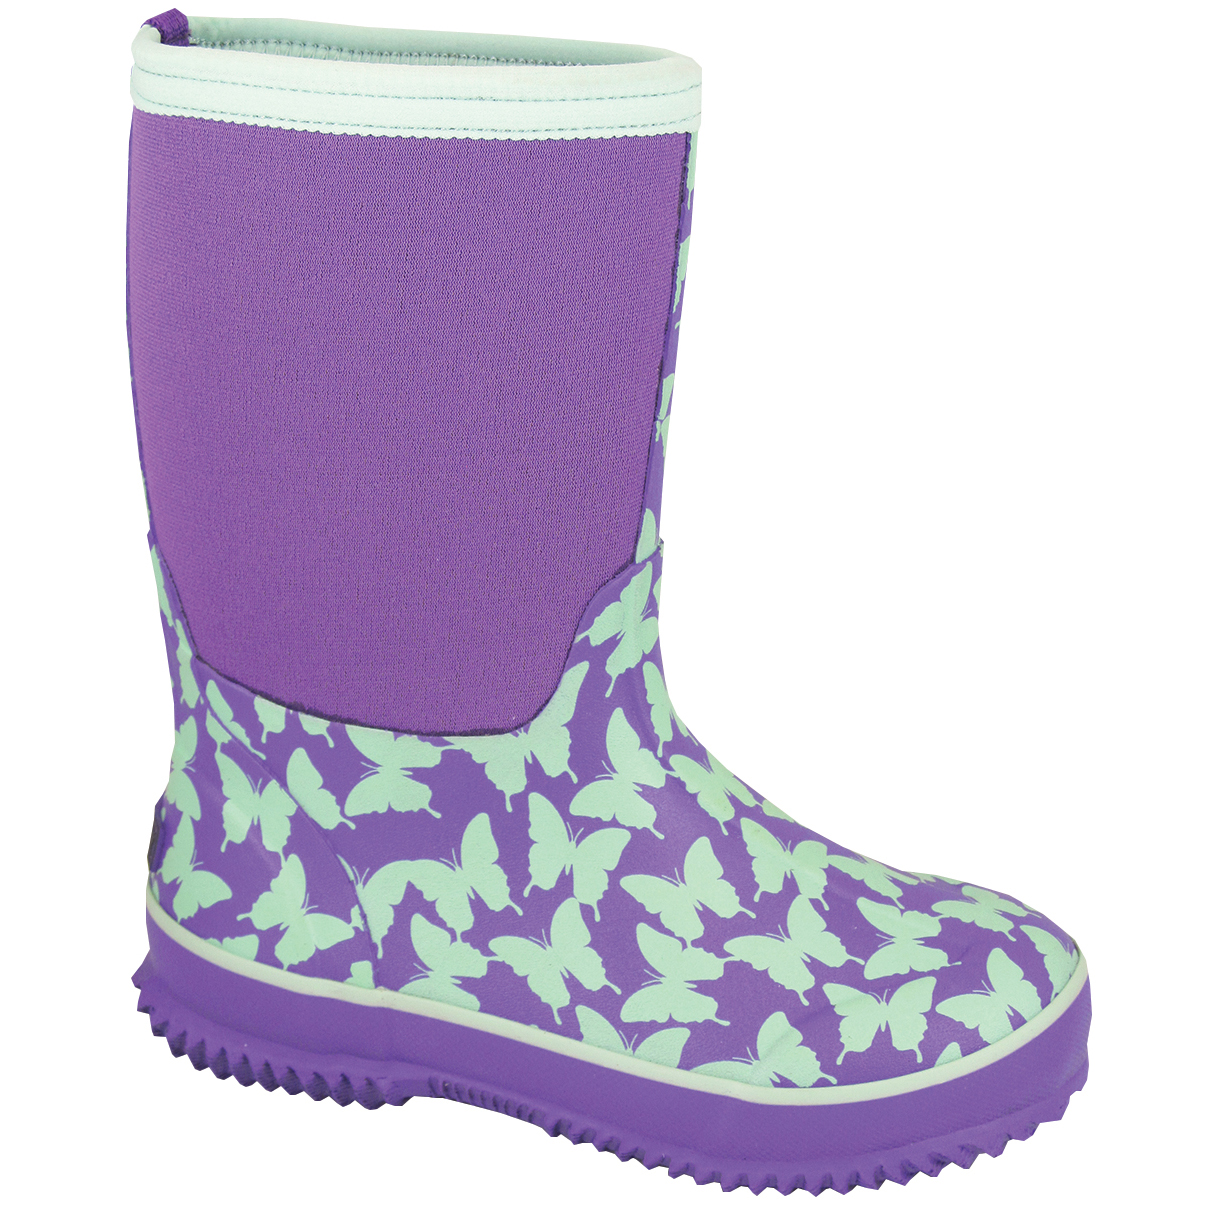 Smoky Mountain Boots Kid's Butterfly Amphibian Purple/Light Green Neoprene Waterproof Boot